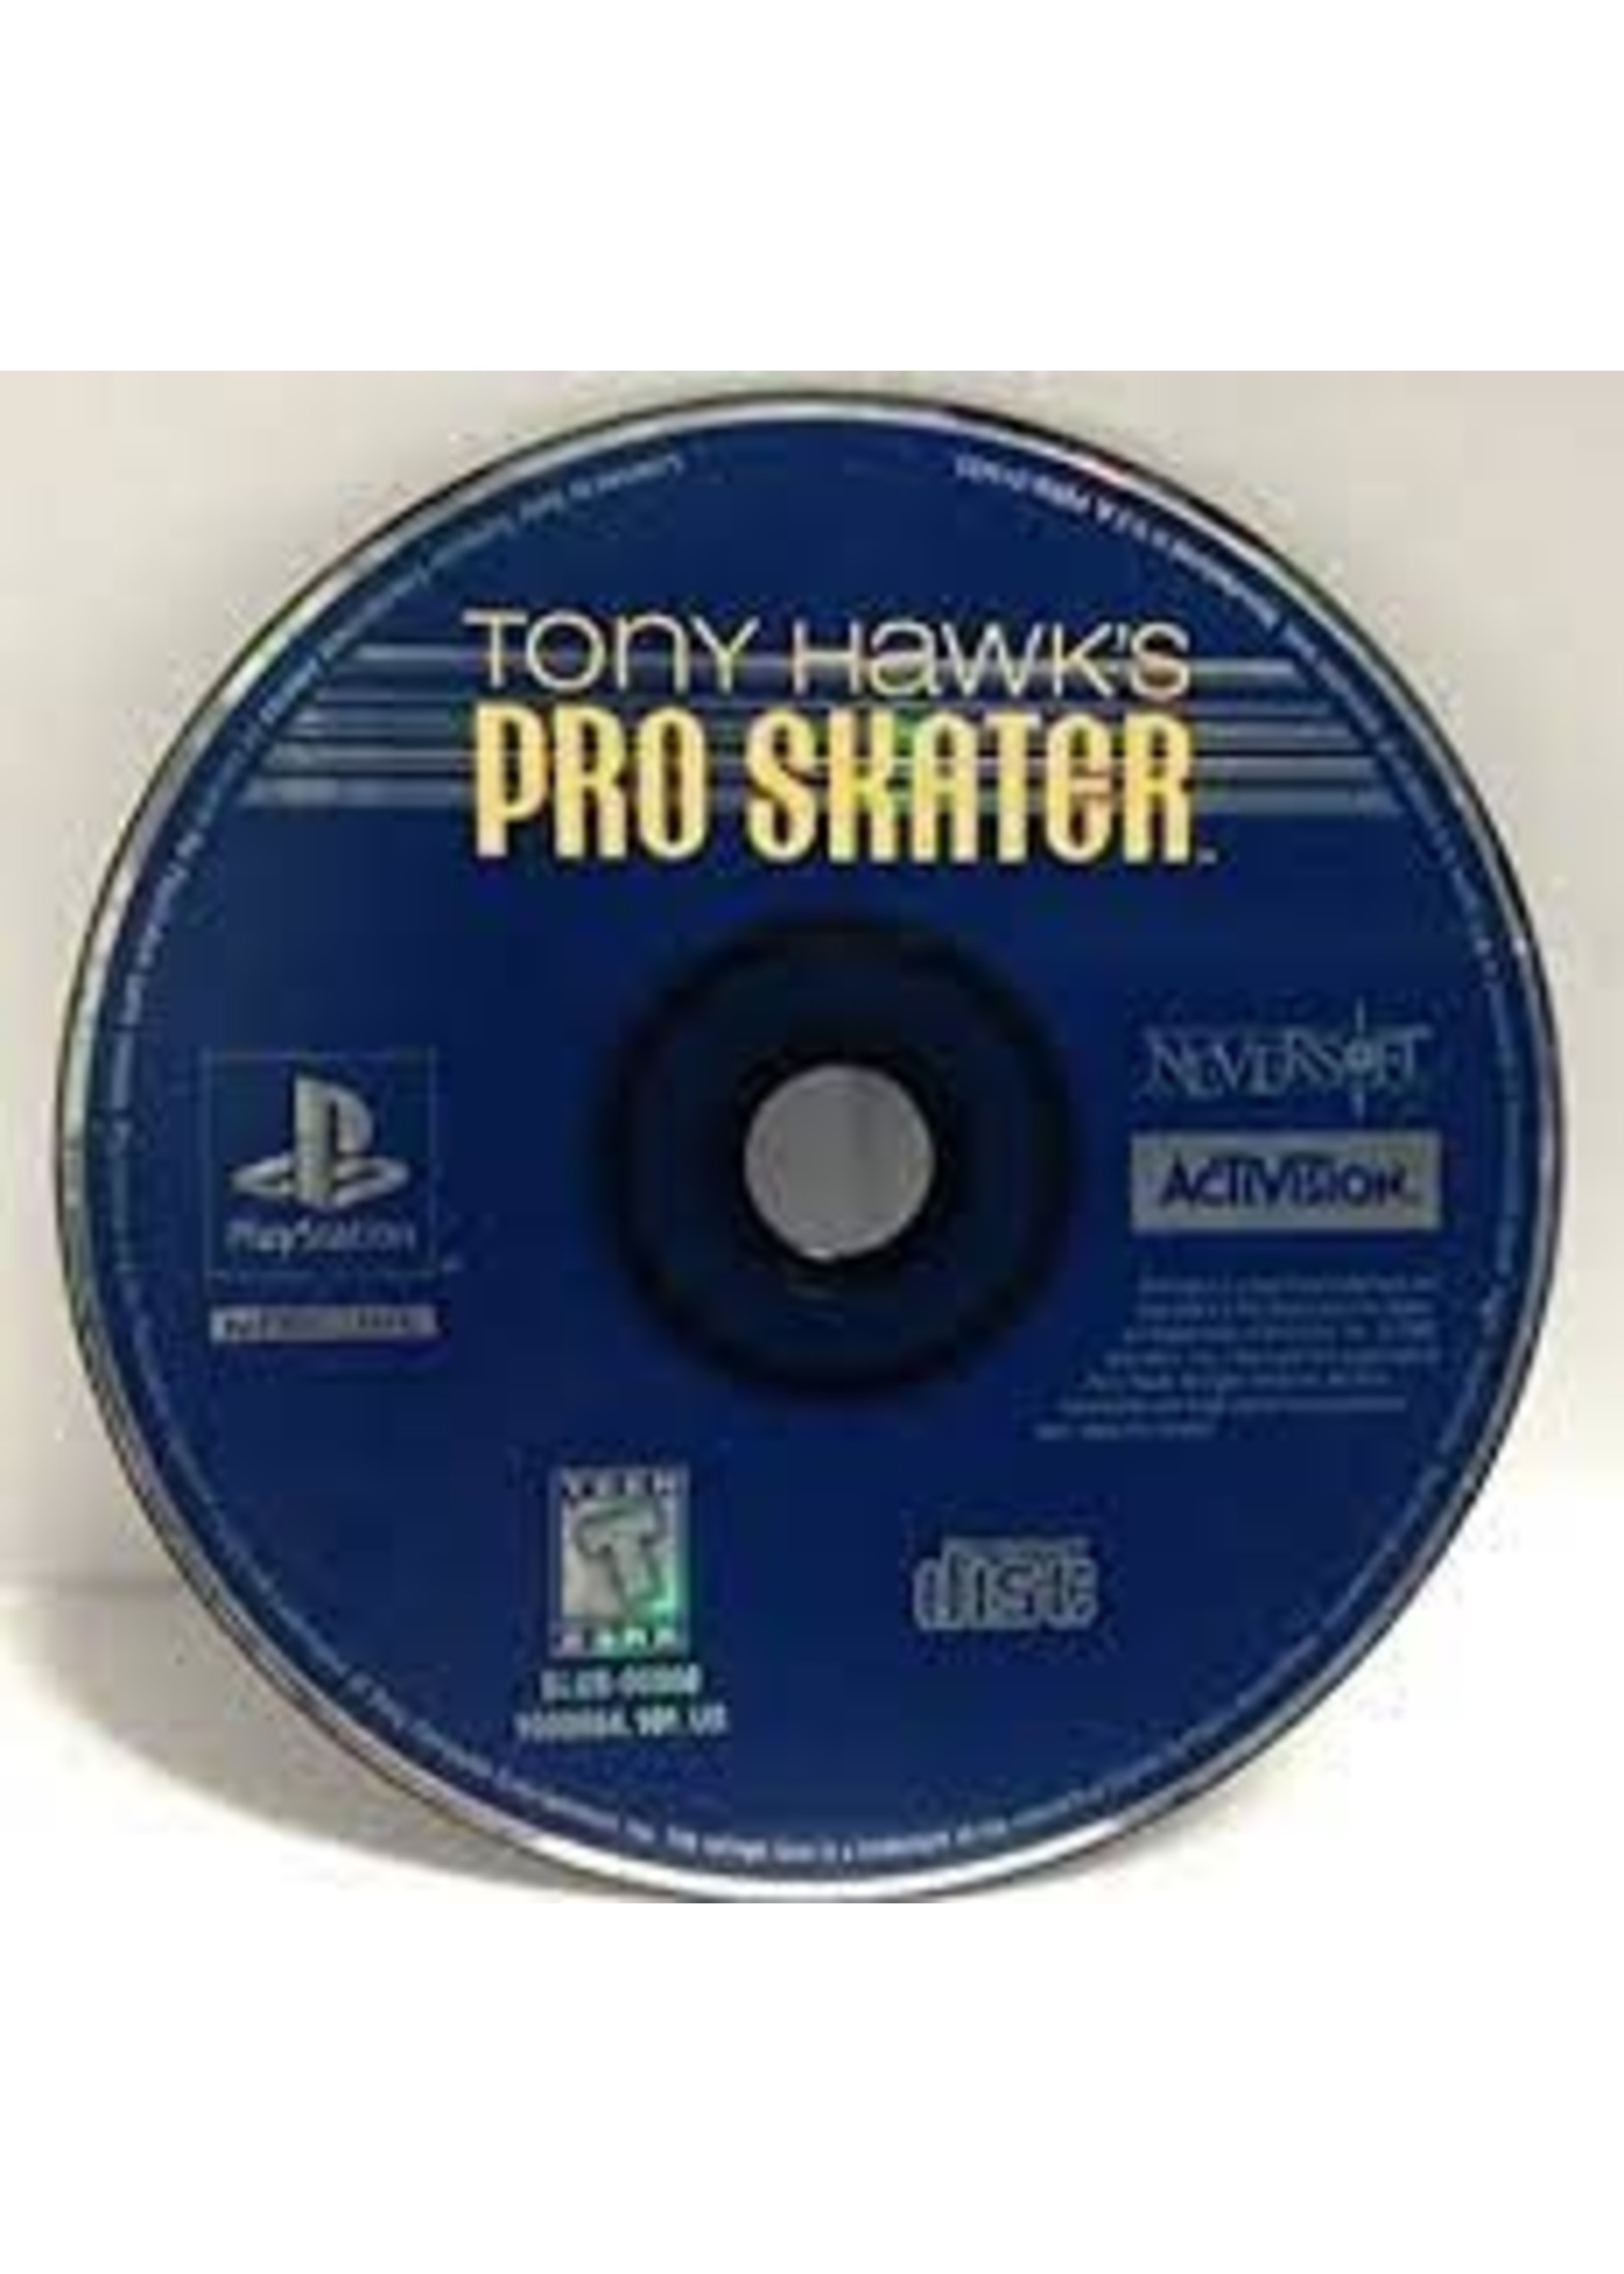 Sony Playstation 1 (PS1) Tony Hawk's Pro Skater - Print